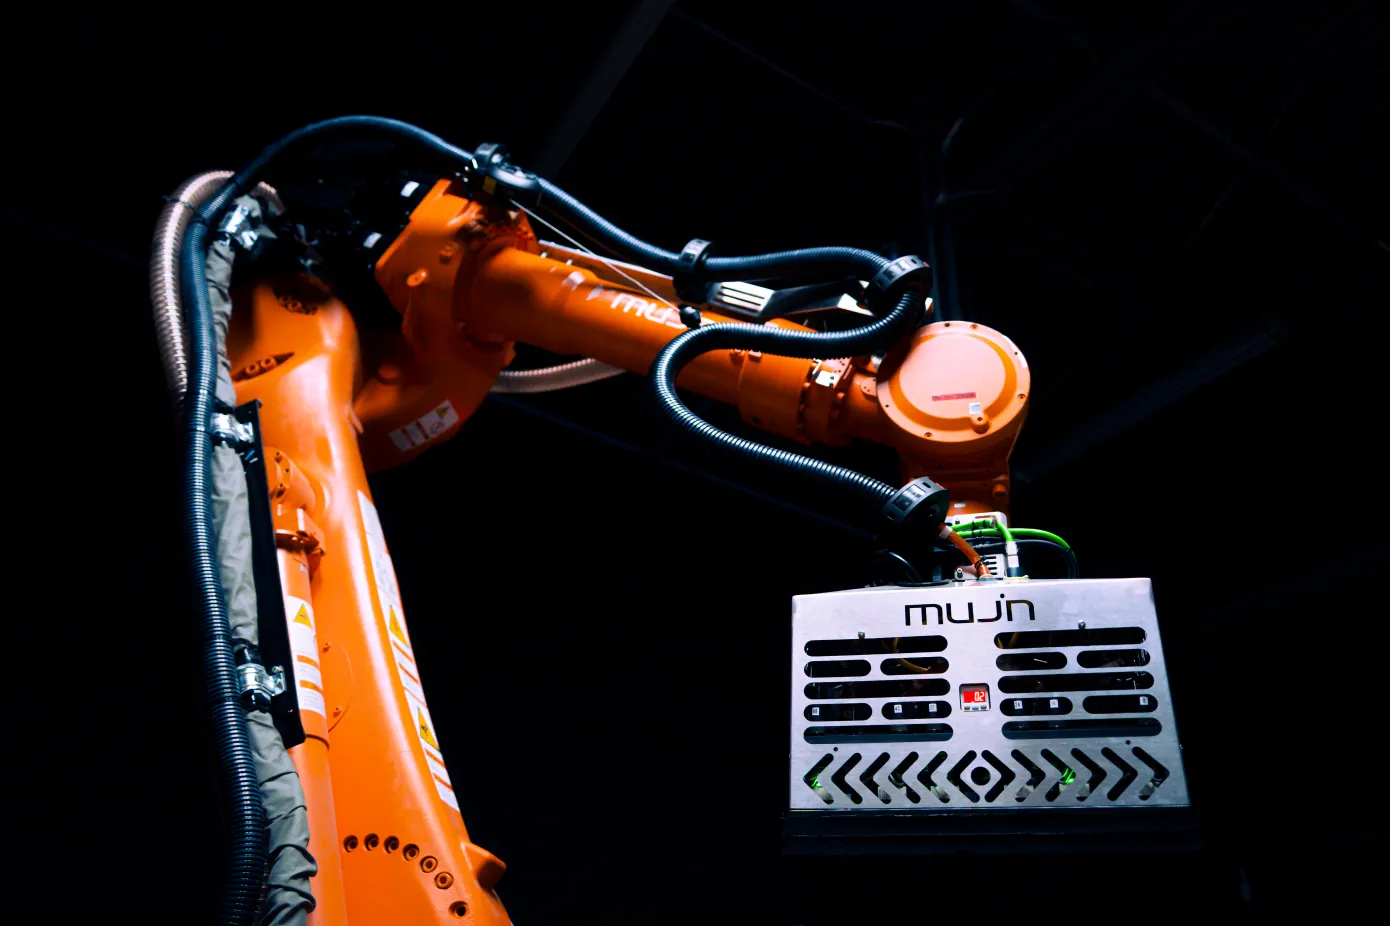 Розробник програмного забезпечення для роботів Mujin залучив $85 млн